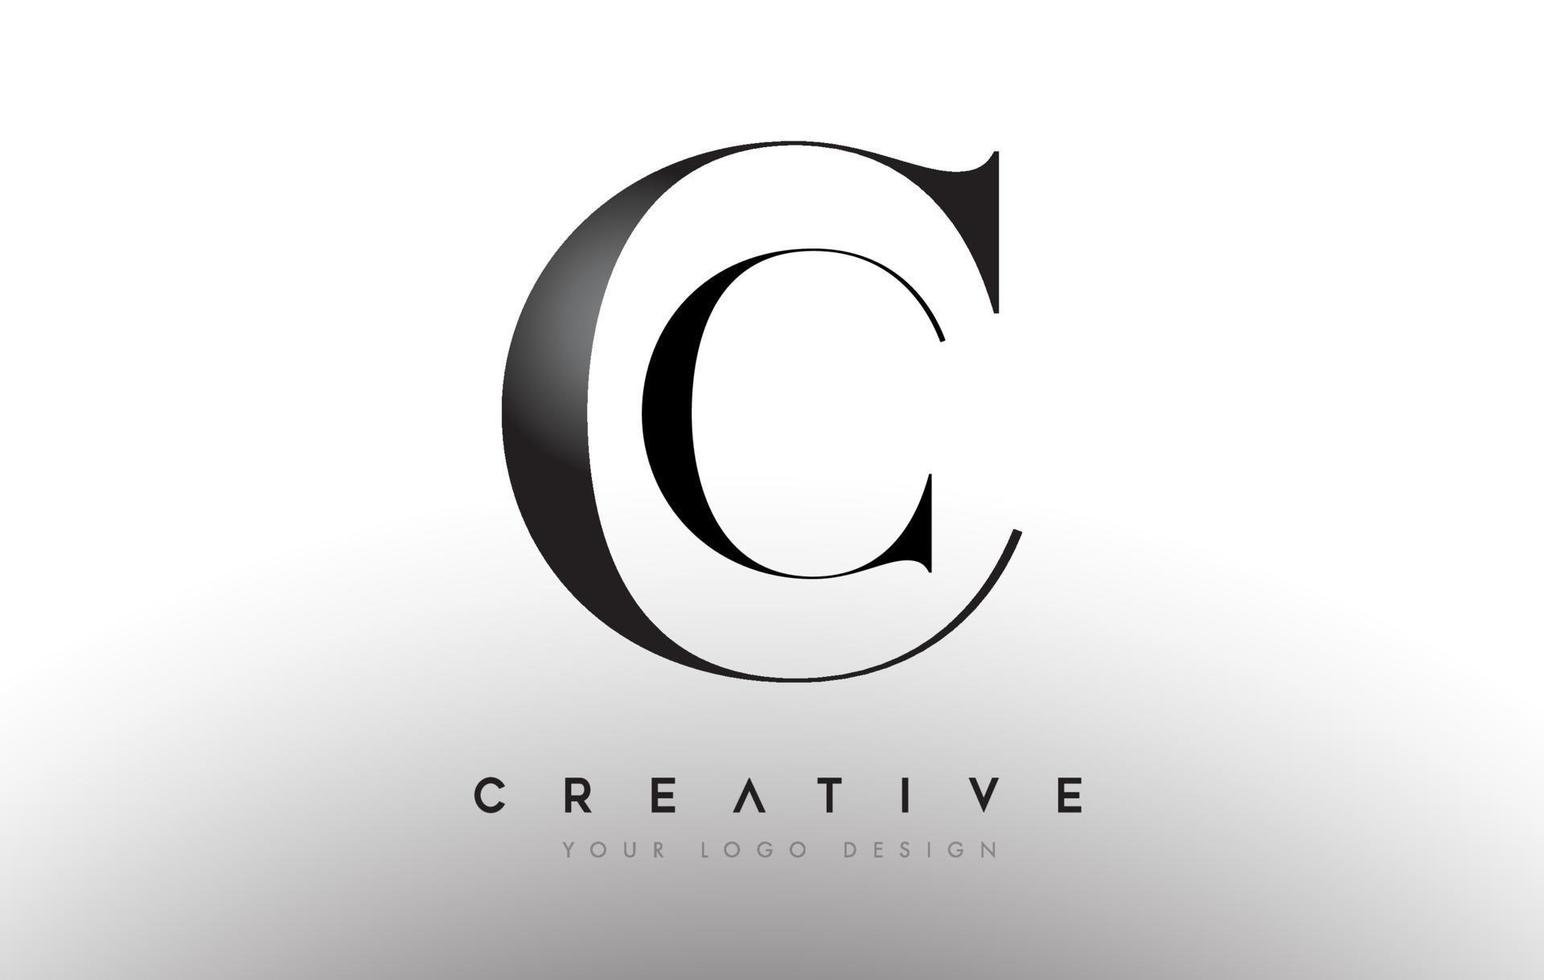 cc cc letter design logo logo icon conceito com fonte serif e estilo clássico elegante look vector